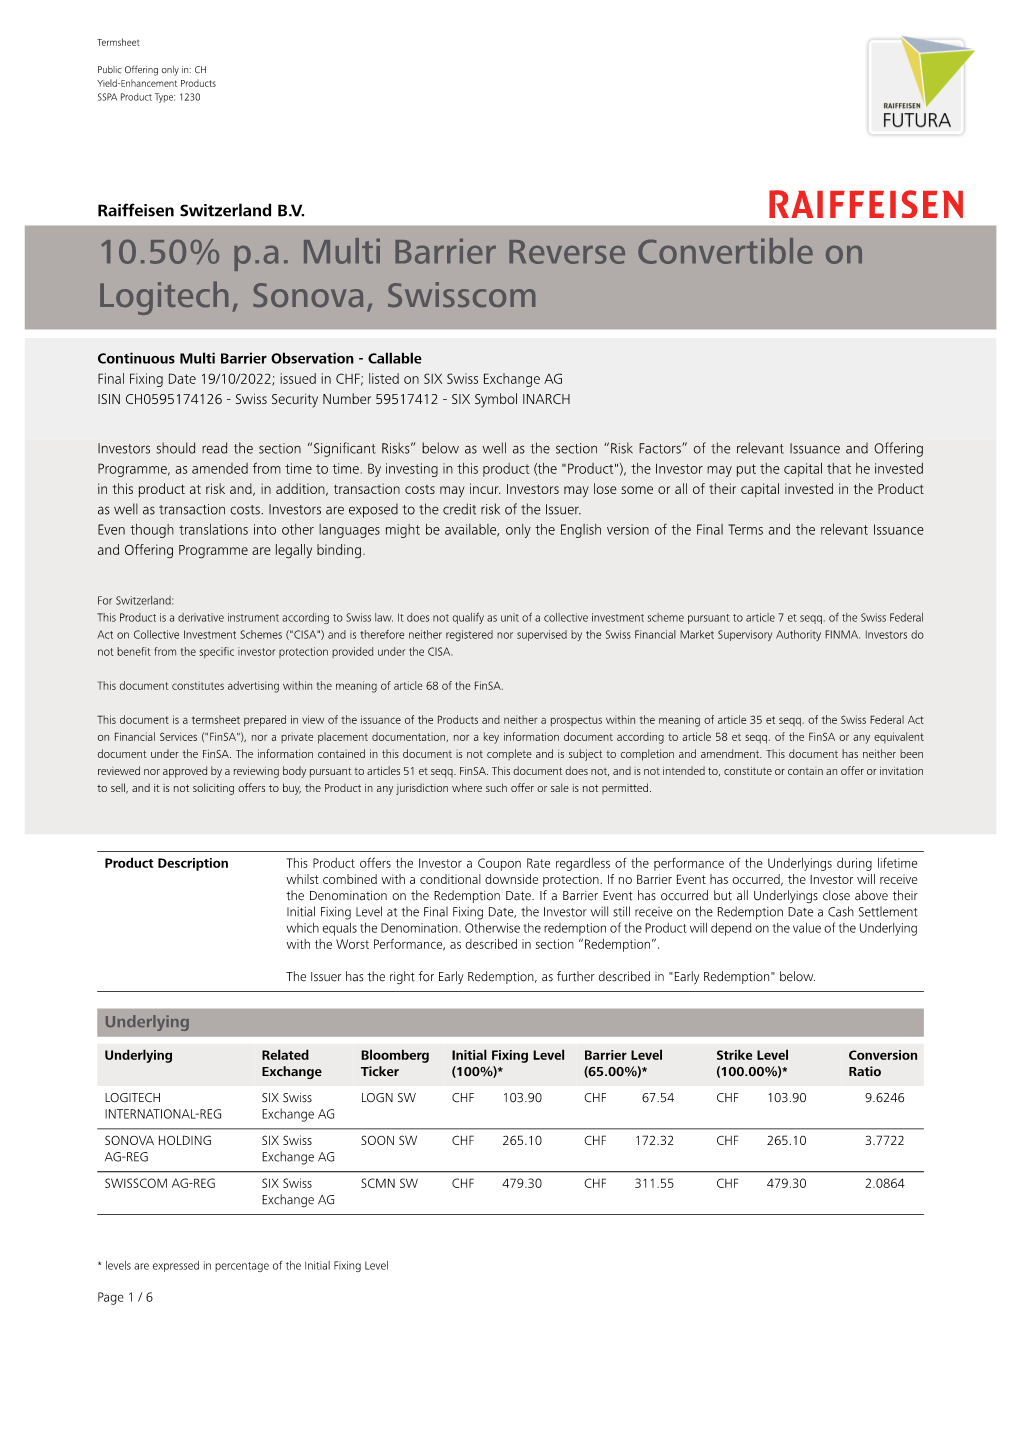 10.50% P.A. Multi Barrier Reverse Convertible on Logitech, Sonova, Swisscom